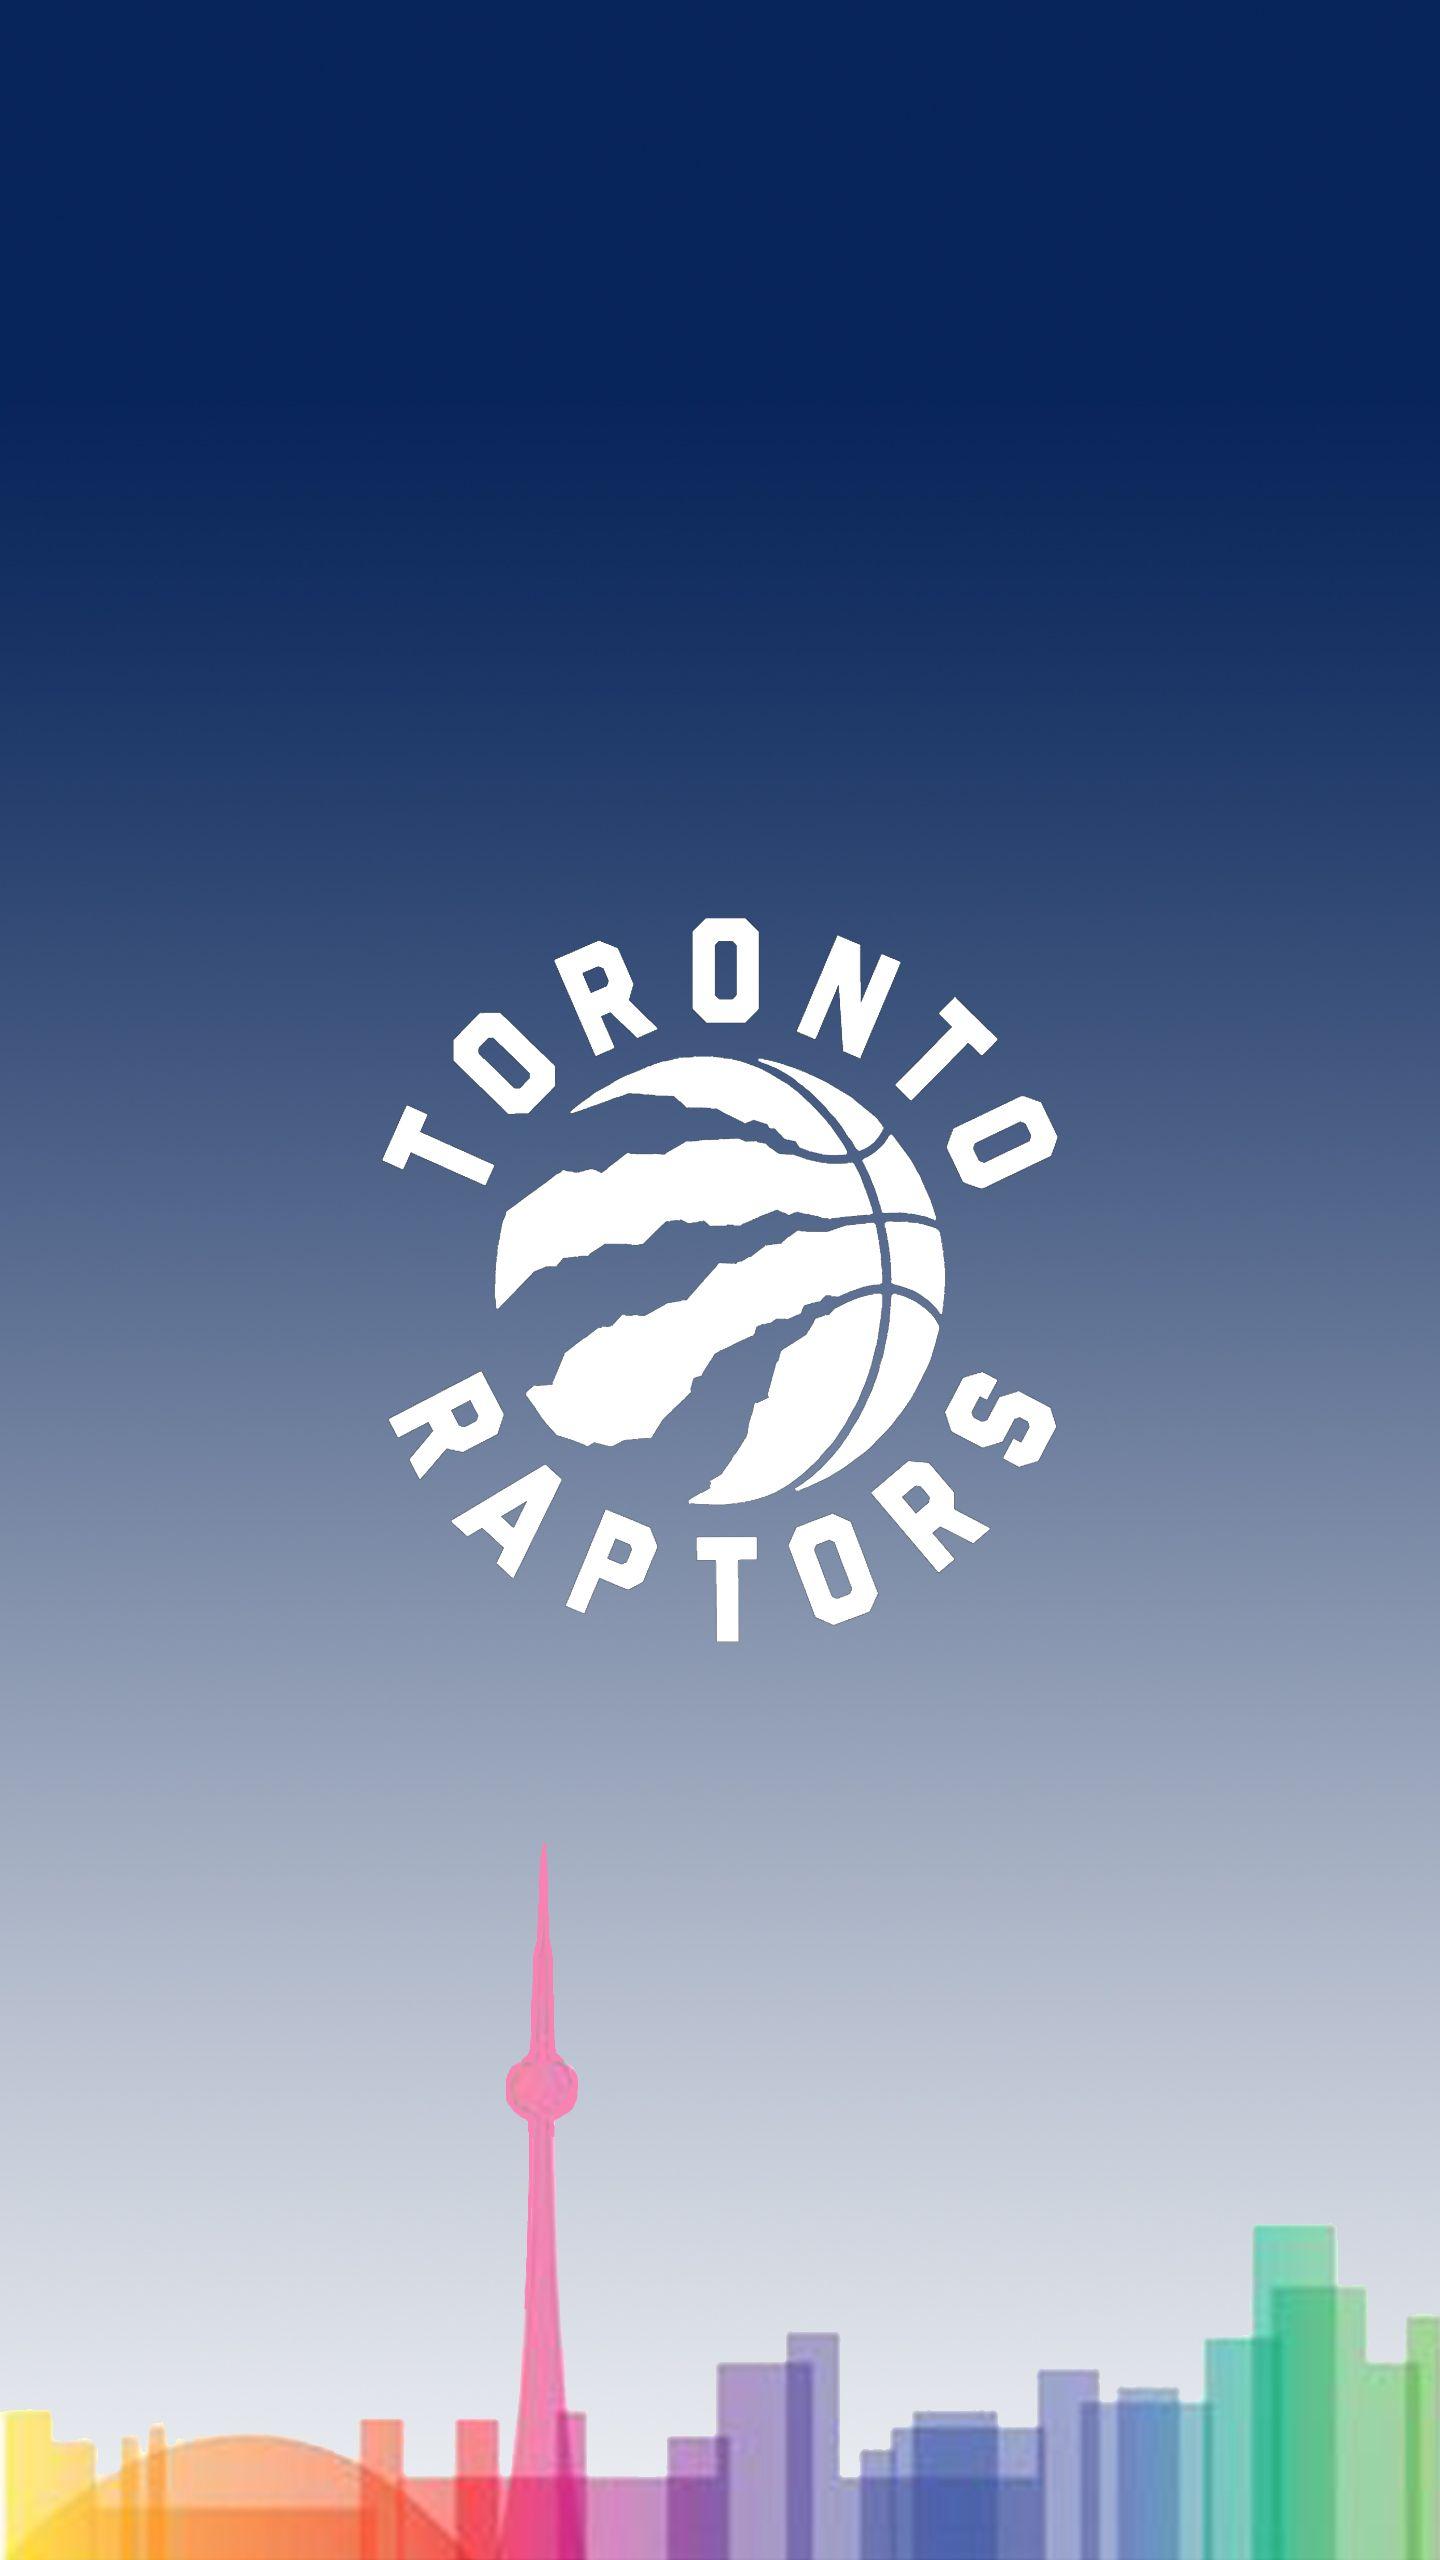 Raptors Nation on Twitter Toronto Raptors  2019 NBA Champions Wallpapers  httpstcoLIDZUmfqQM  Twitter